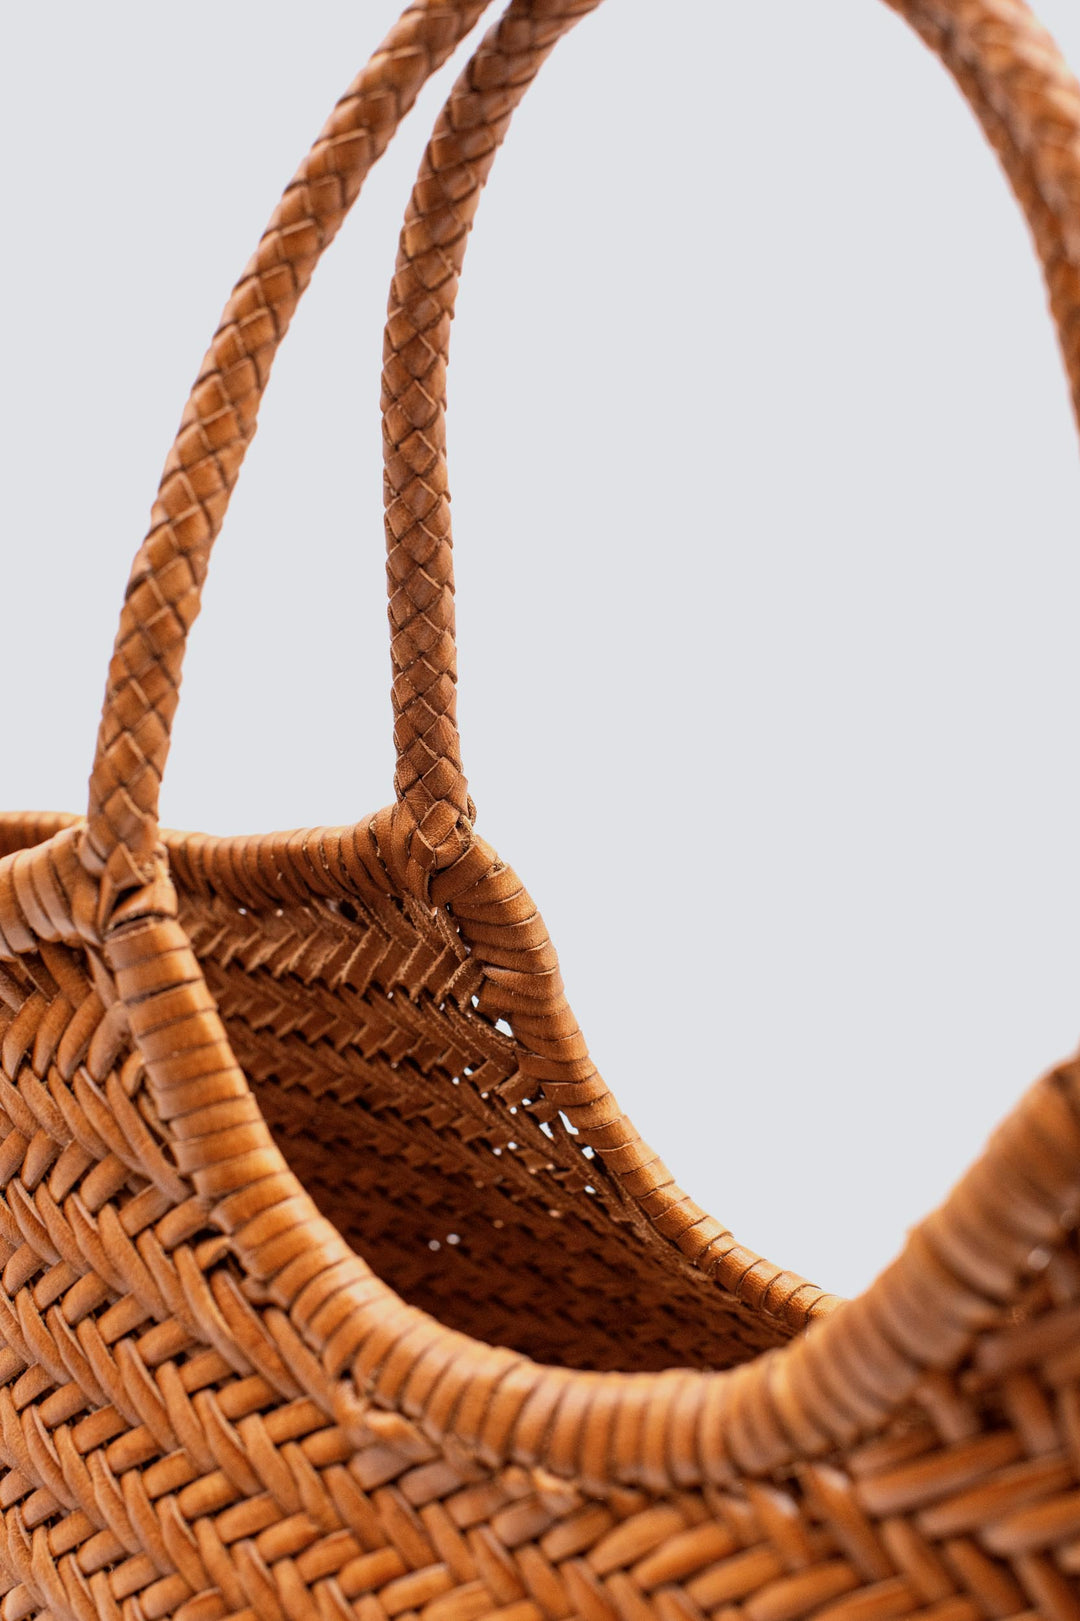 Dragon Diffusion woven leather bag handmade - Nantucket Big Tan